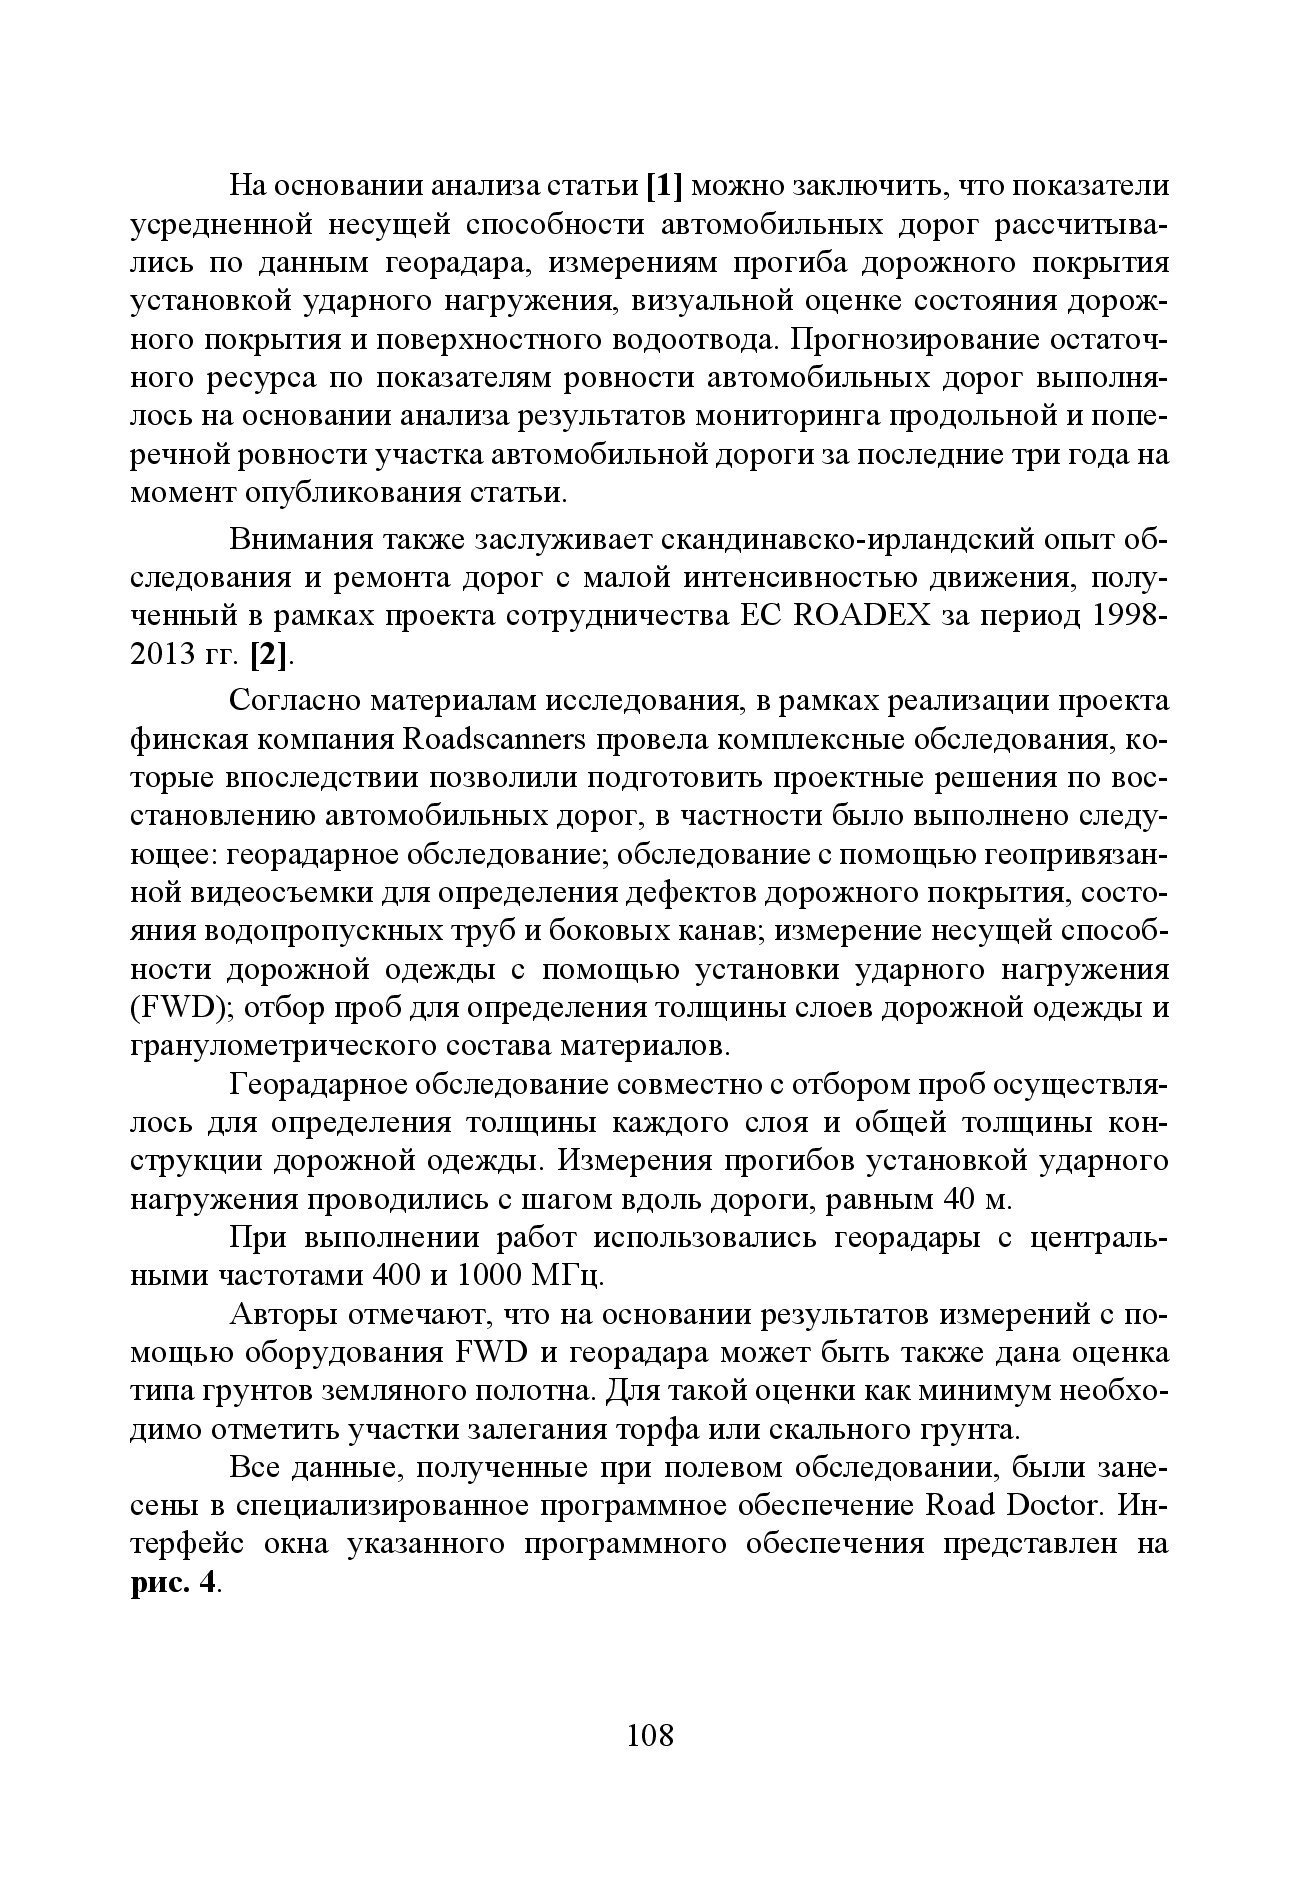 GPR & FWD - выпуск 46 журнал Дороги и мосты_с.108